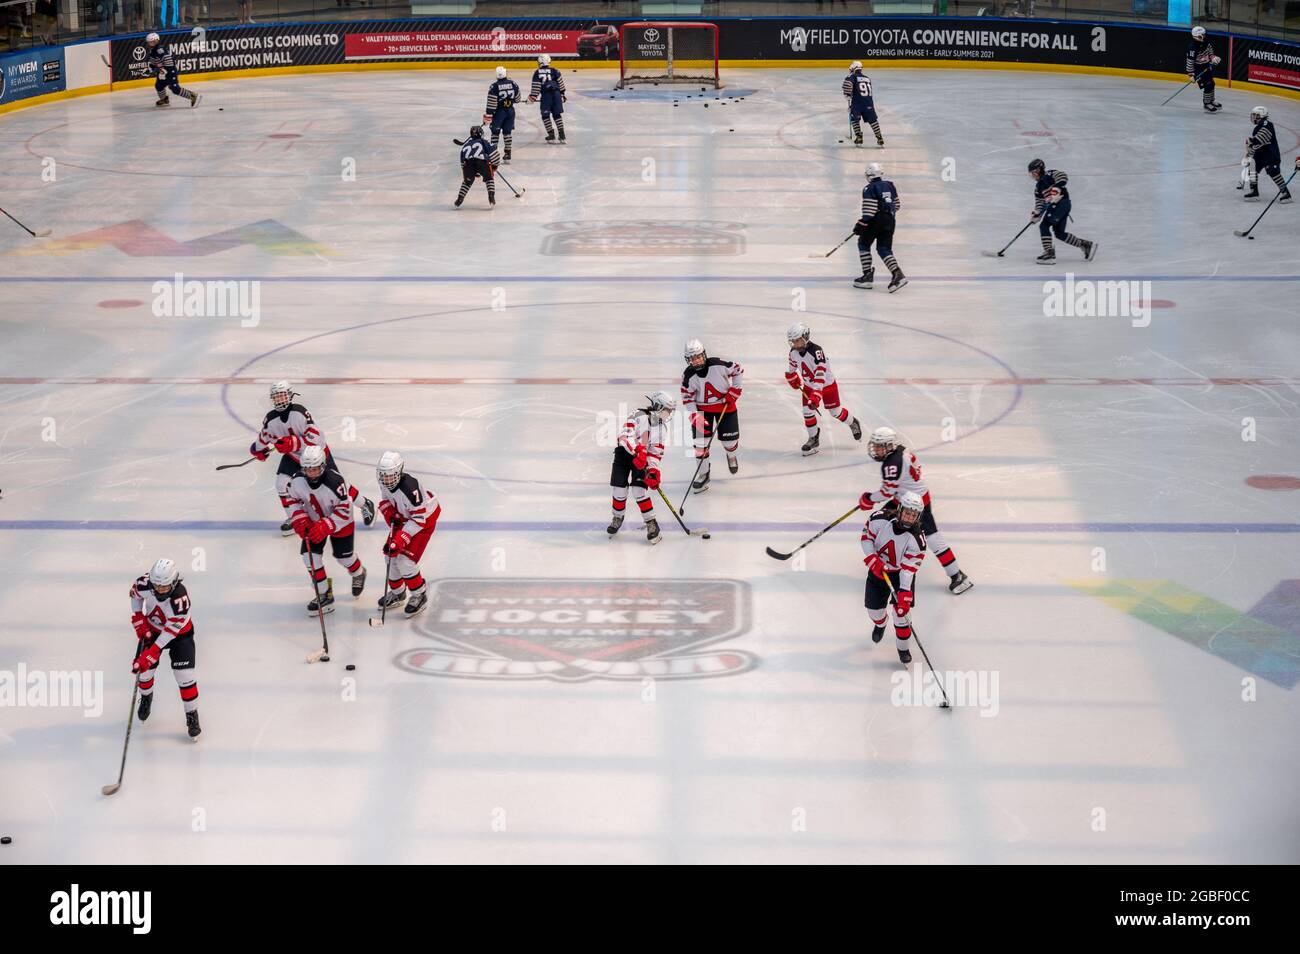 Edmonton, Alberta - August 1, 2021: Ice hockey at the West edmonton Mall Ice Palace. Stock Photo